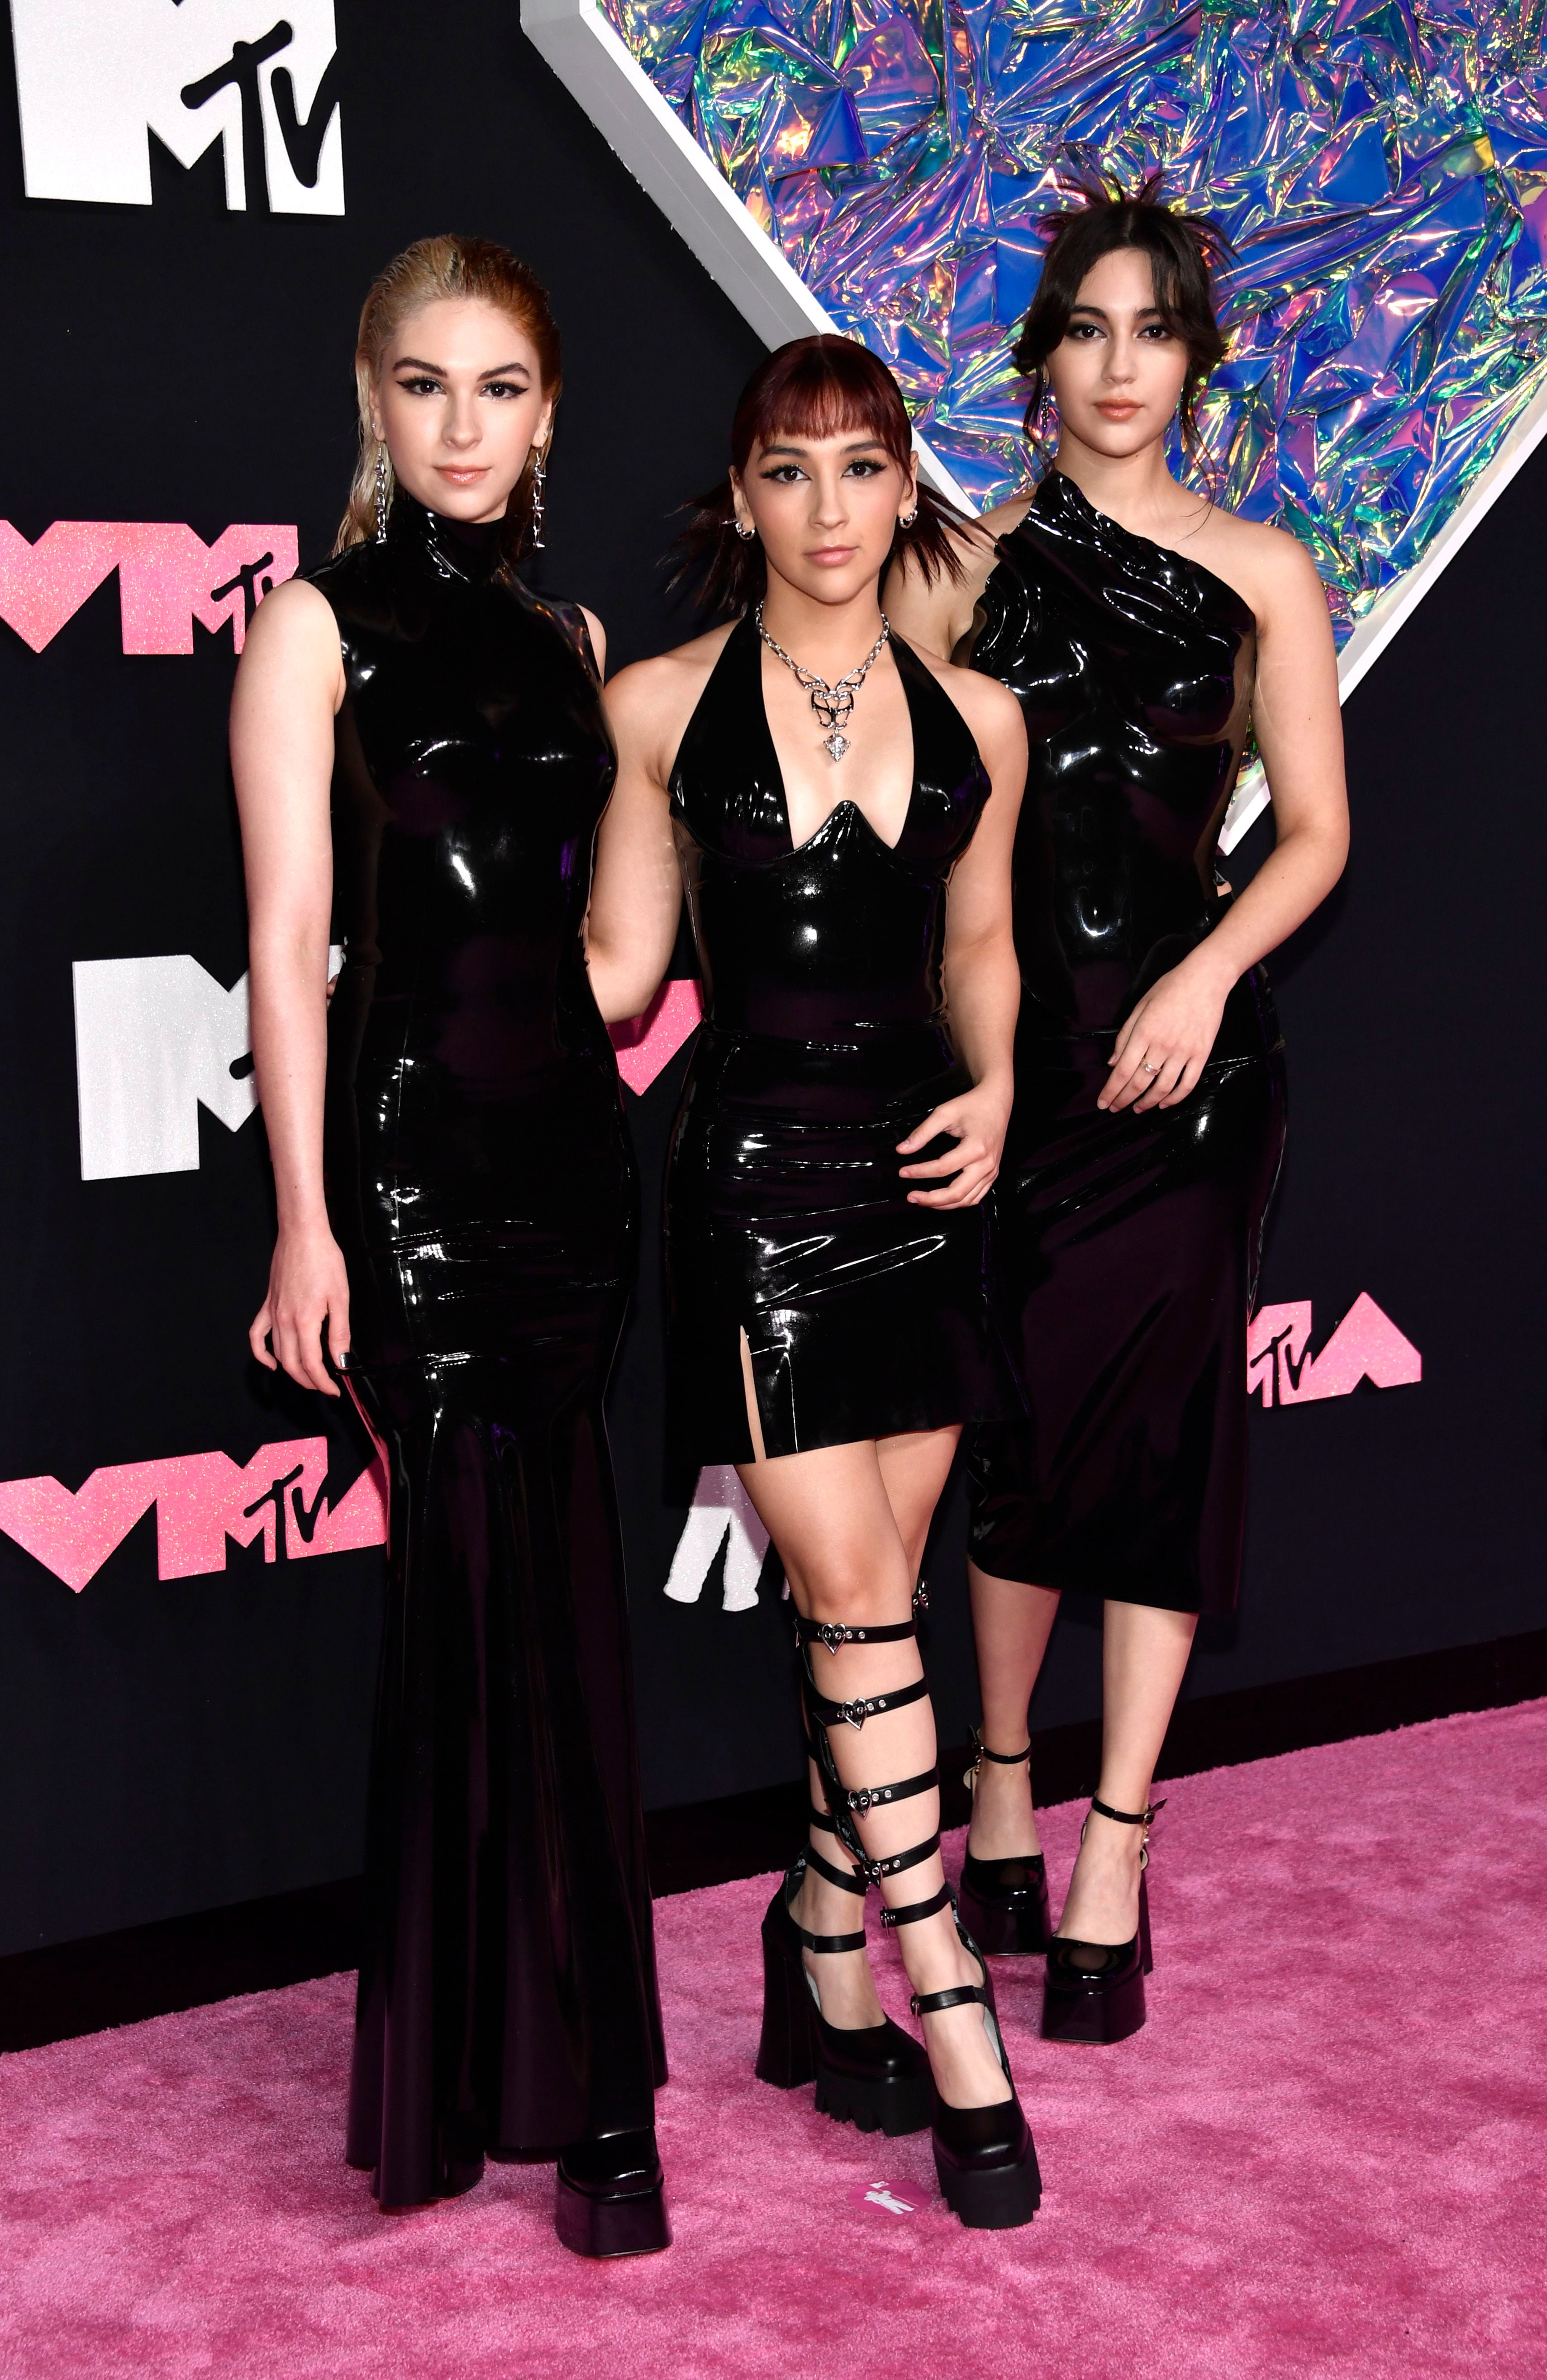 ¿Quiénes son The Warning? La banda de rock de mujeres mexicanas que tocó con Demi Lovato en MTV Video Music Awards 2023